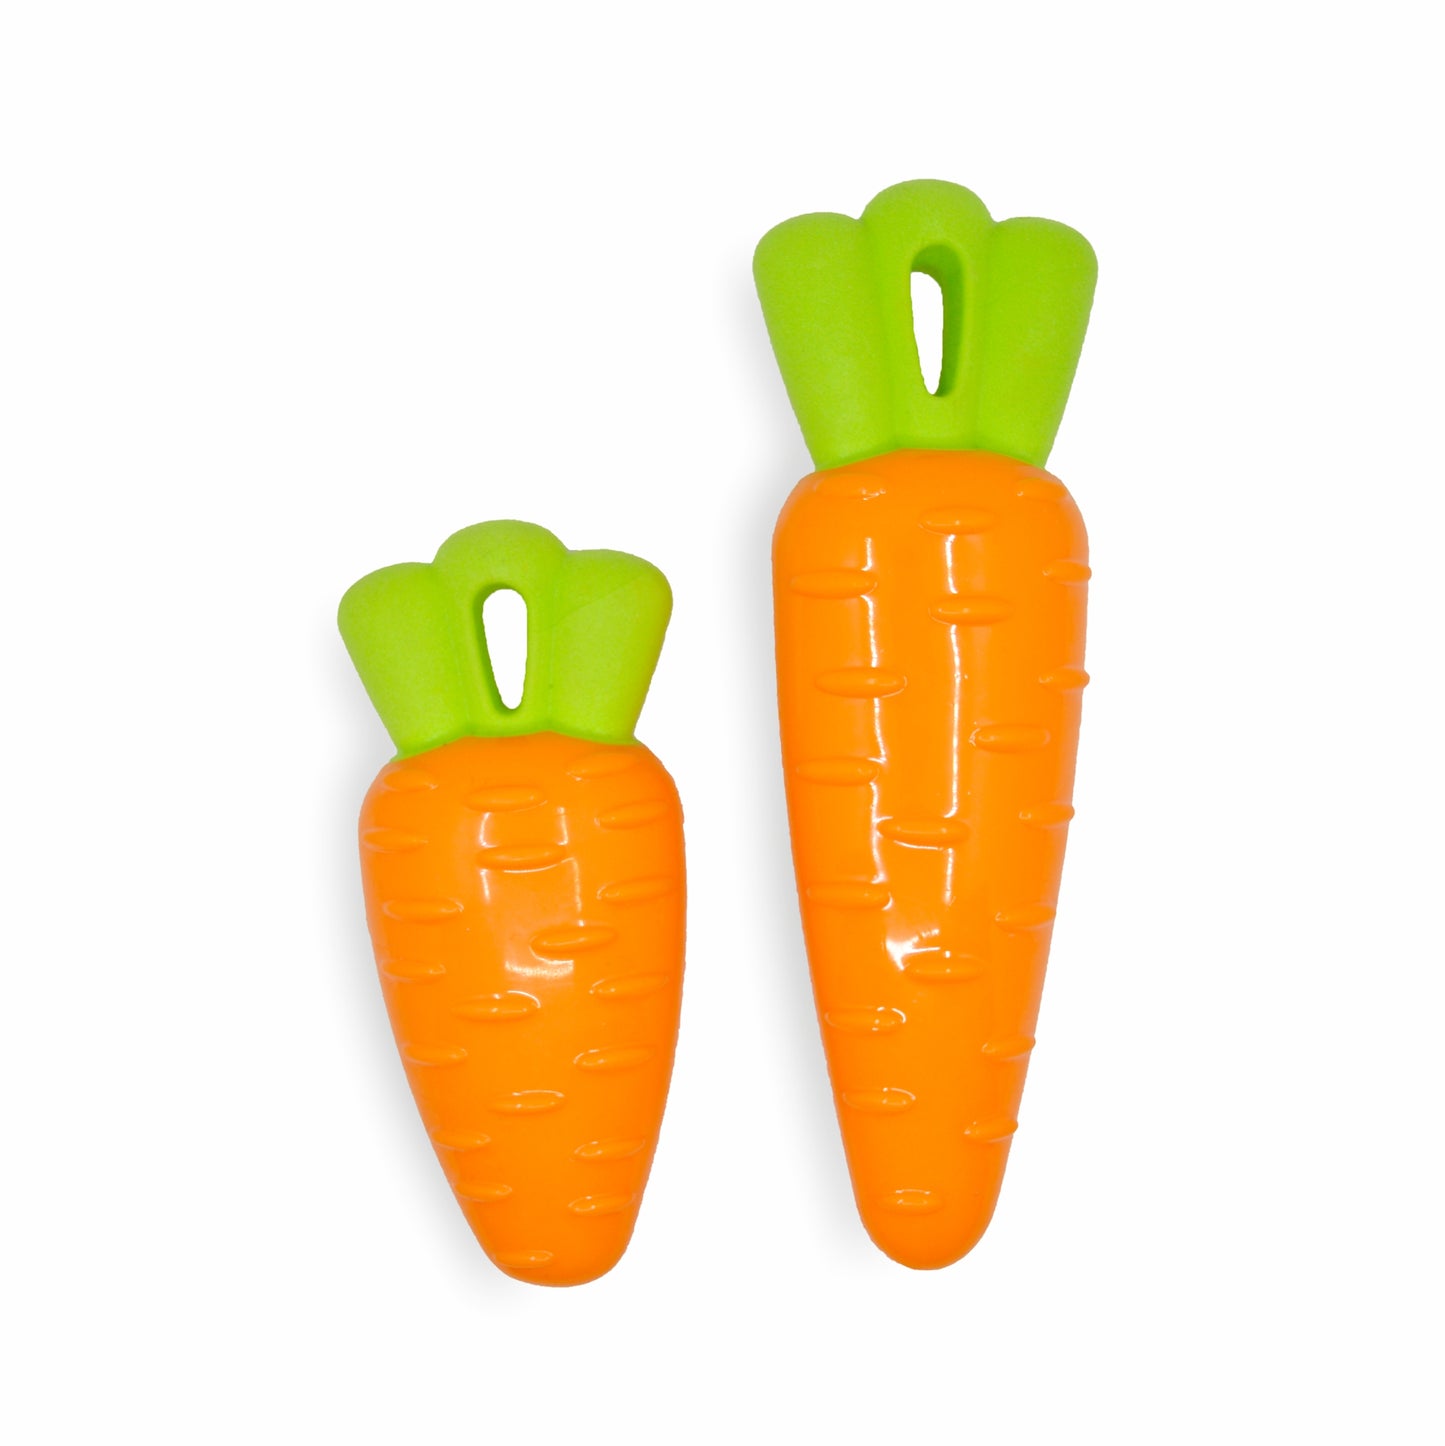 Fofos Vegi-Bites Carrot